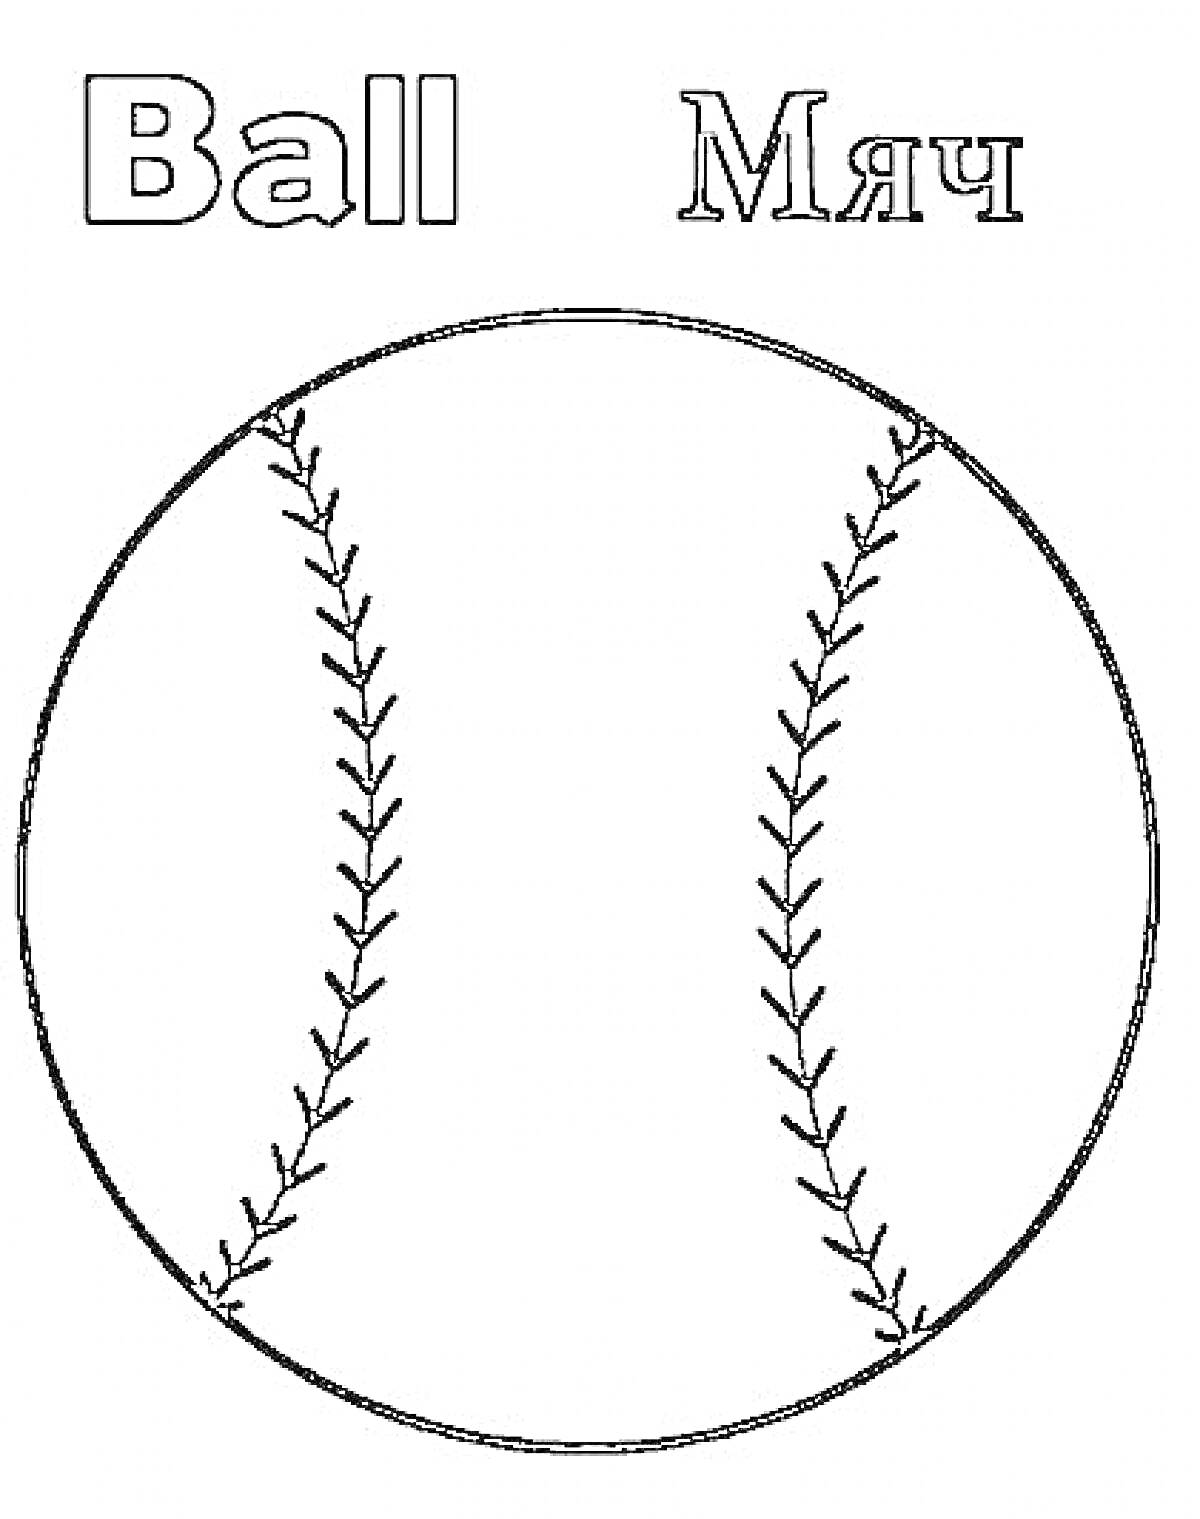 Раскраска Бейсбольный мяч с подписями на английском и русском языках